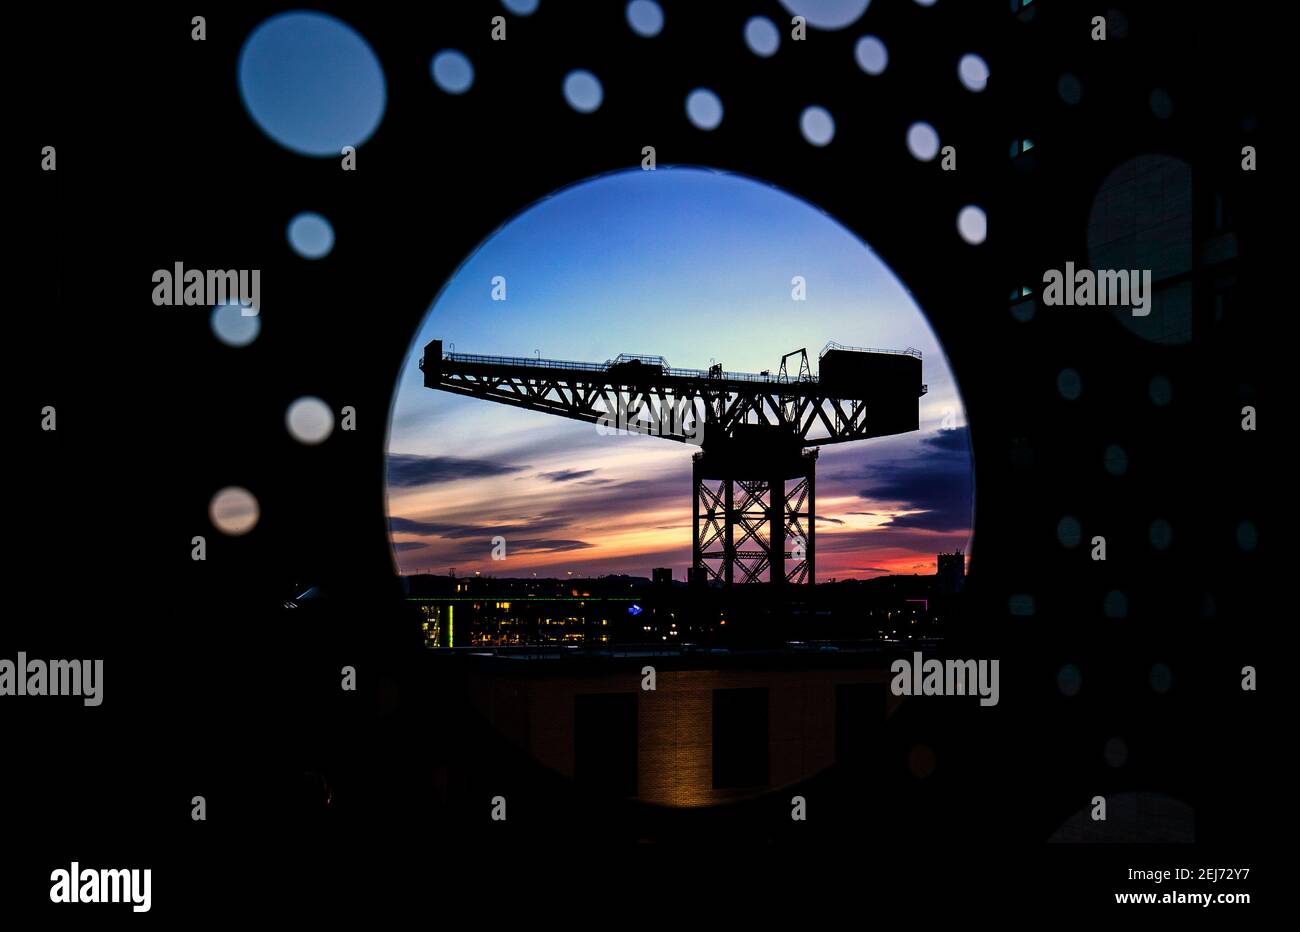 Sonnenuntergang hinter dem Finnieston Crane, einem von vier verbliebenen Auslegerkranen entlang des Flusses Clyde in Glasgow. Bilddatum: Sonntag, 21. Februar 2021. Stockfoto